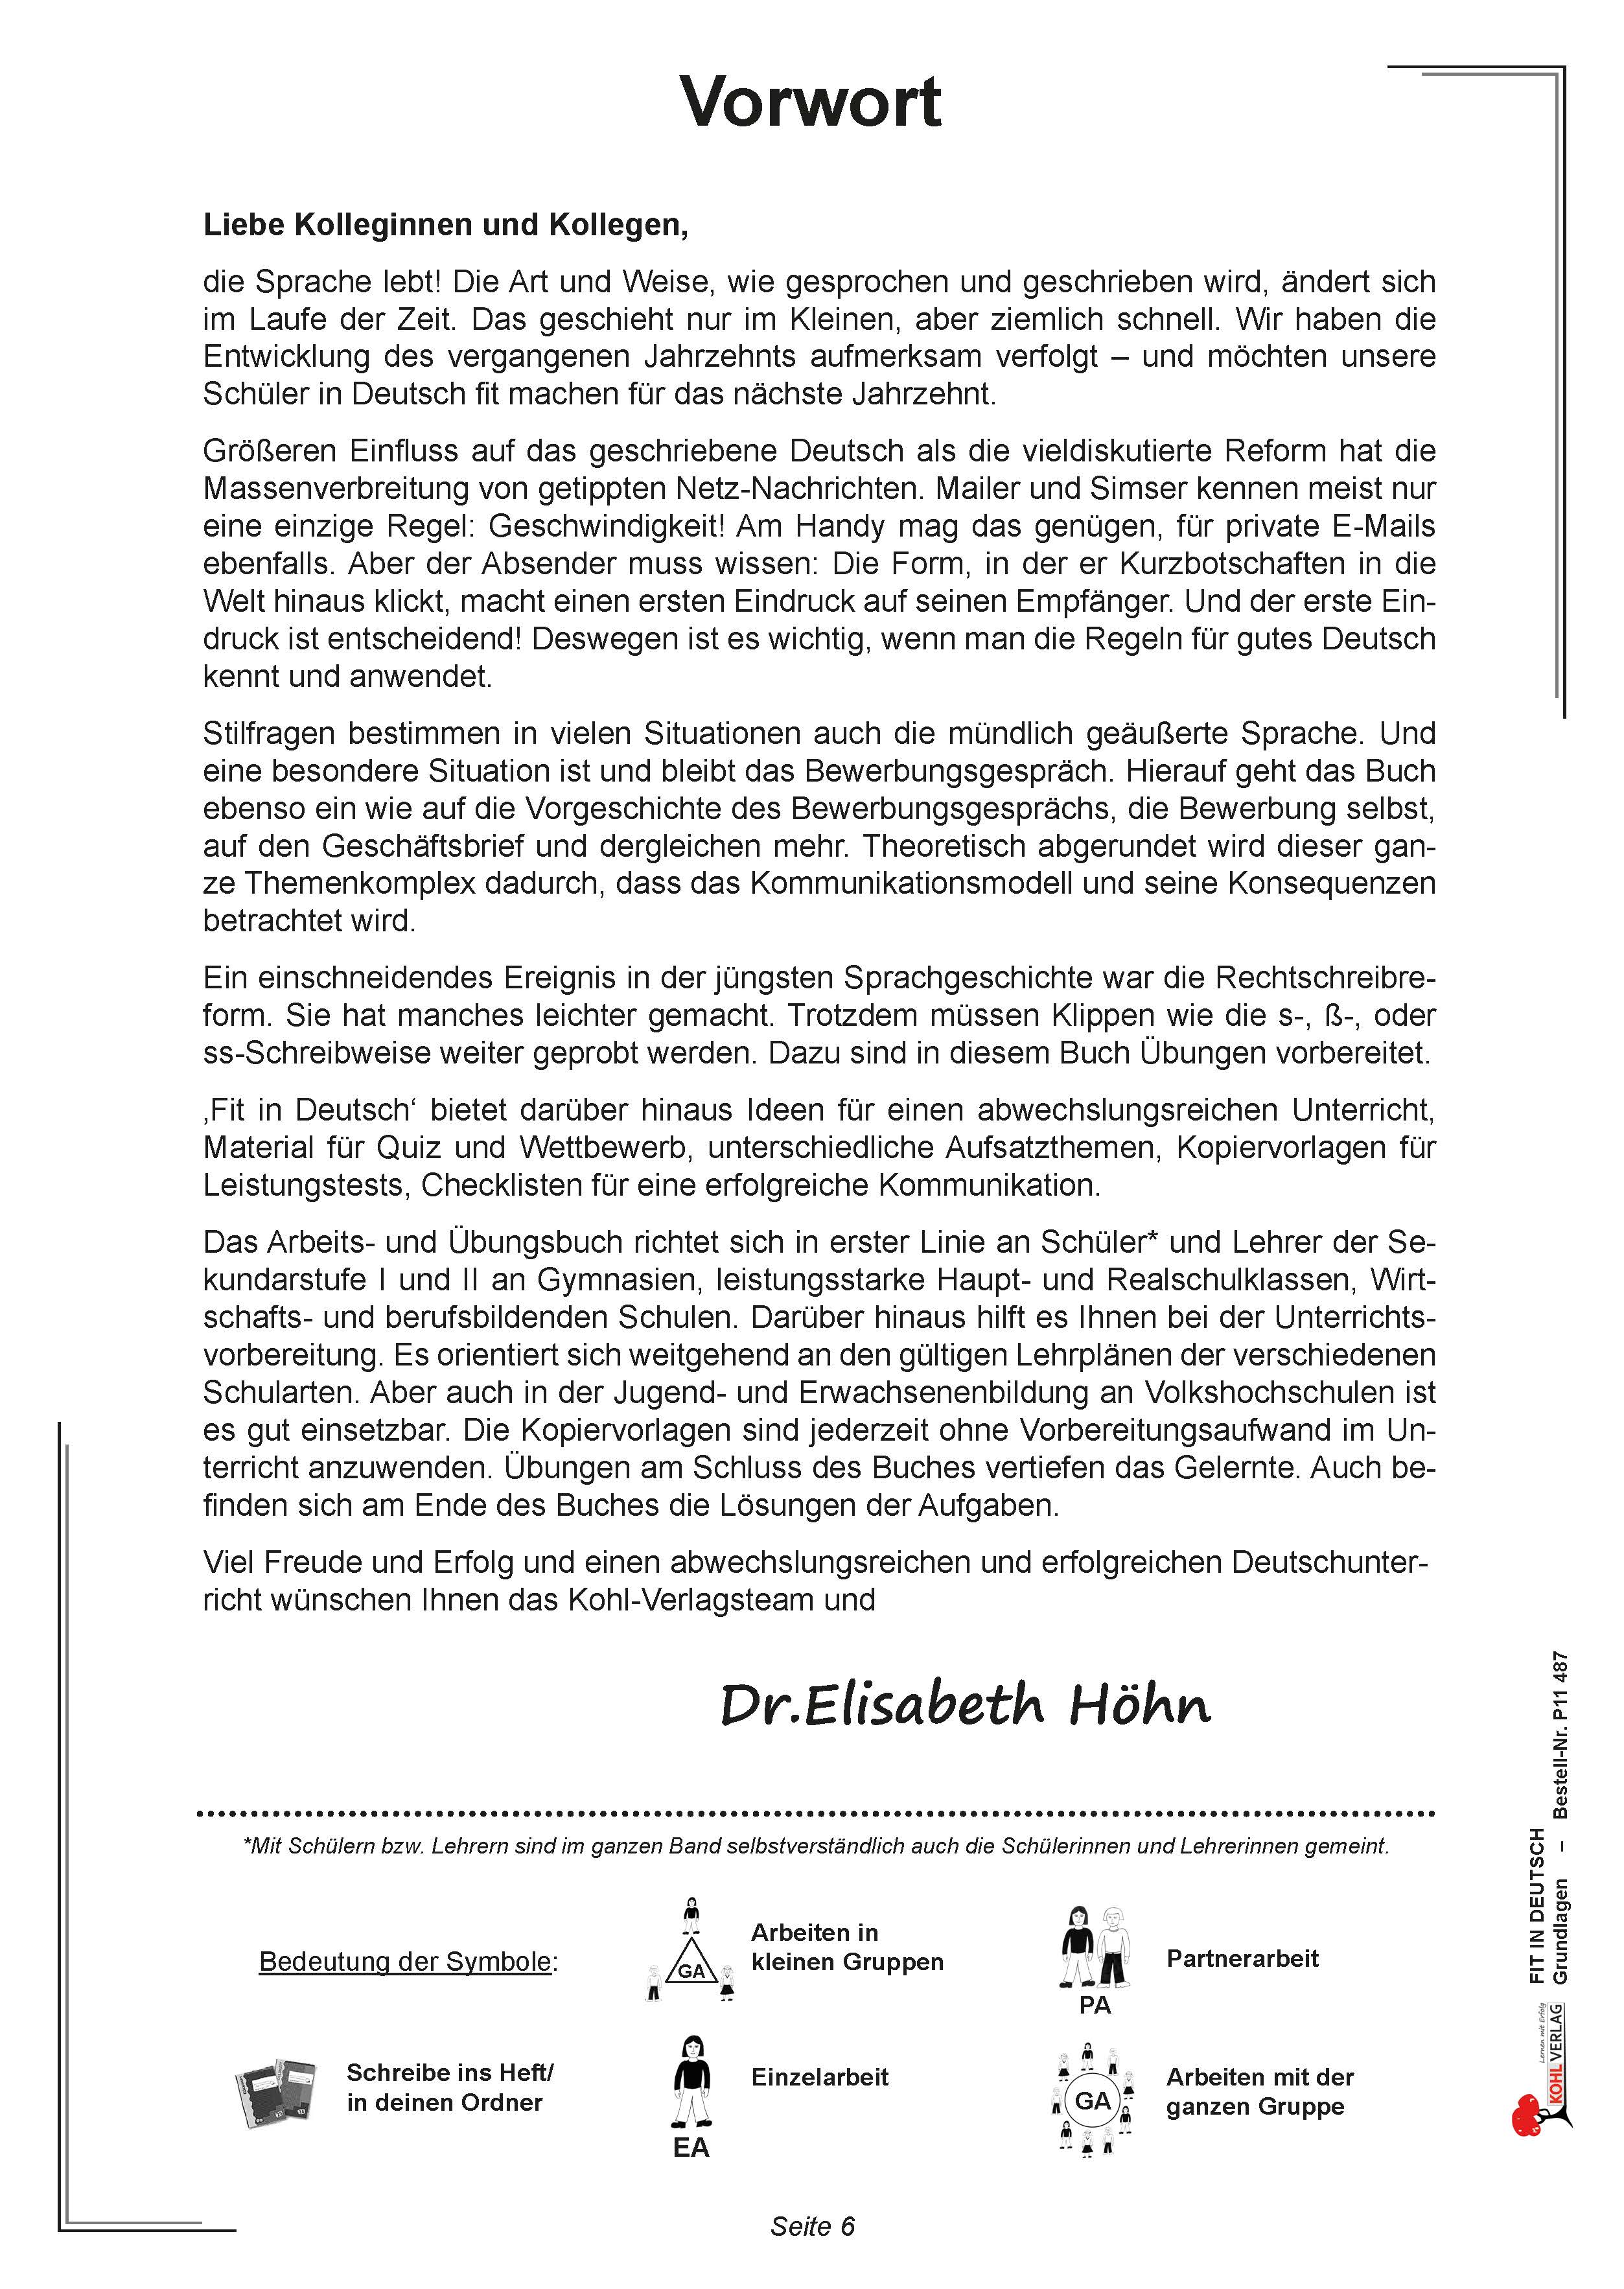 Fit in Deutsch - Grundlagen: Journalistische Texte